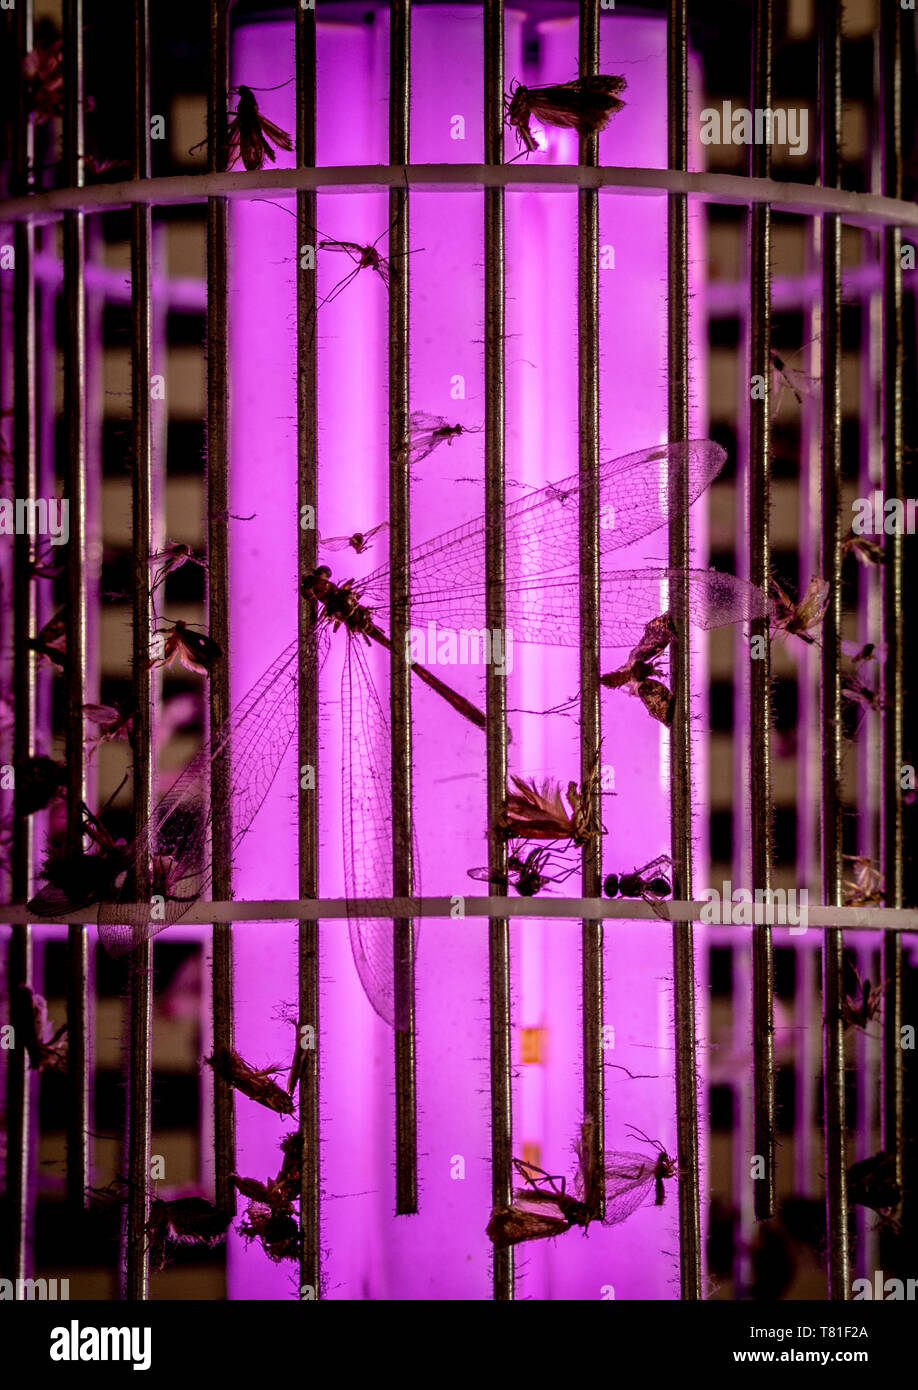 Gli insetti morti catturato sulla zanzara trappola fly, stagliano mediante trappole UV della luce ultravioletta, estinzione di insetti mediante azione umana nozione Foto Stock